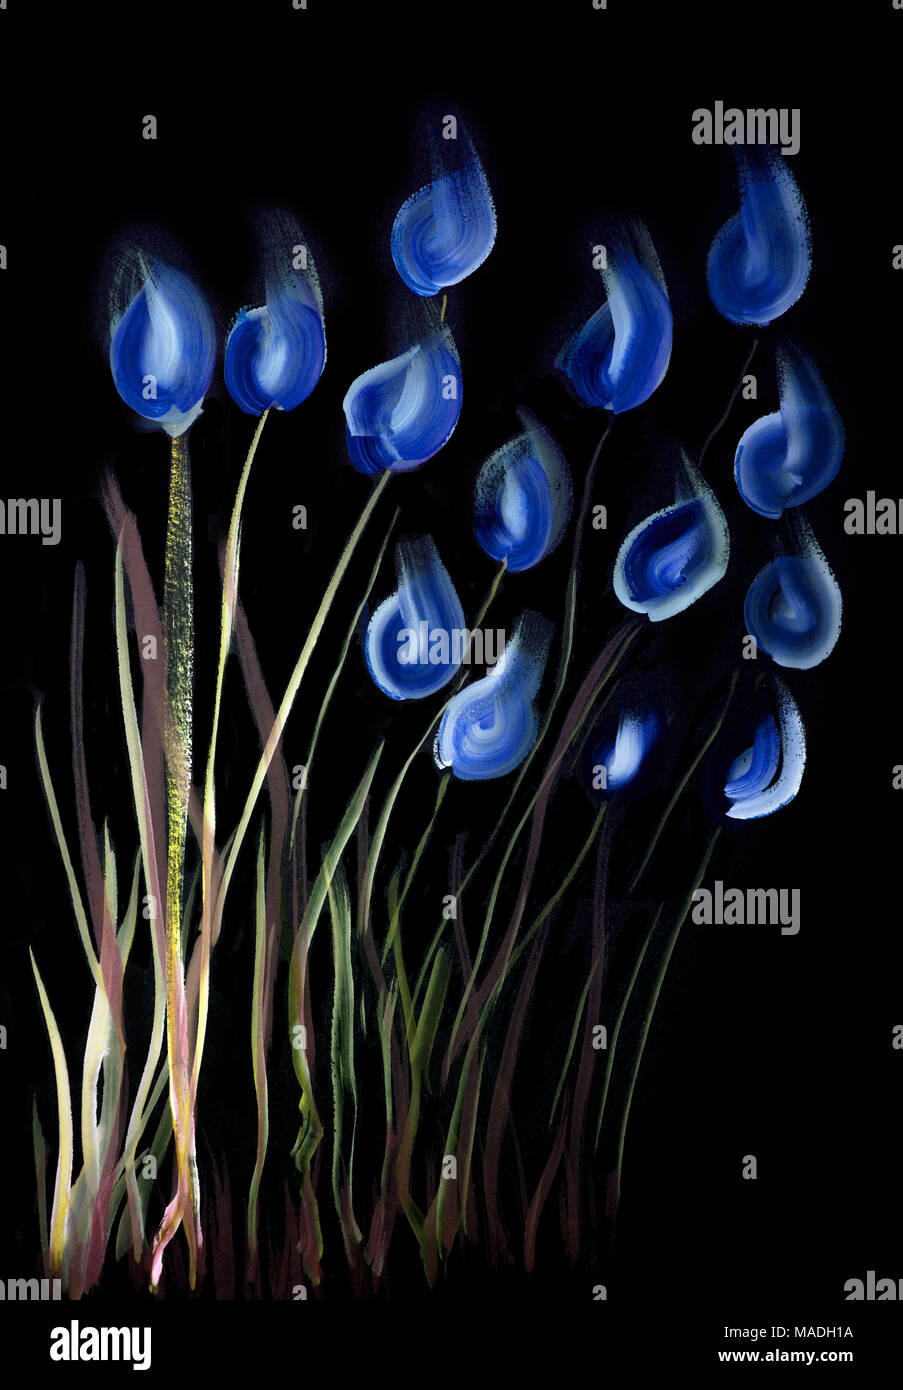 Un coup de pinceau bleu et de tulipes blanches sur un fond noir. La technique du badigeonnage près des bords donne un effet de flou dû à la surface altérée Banque D'Images